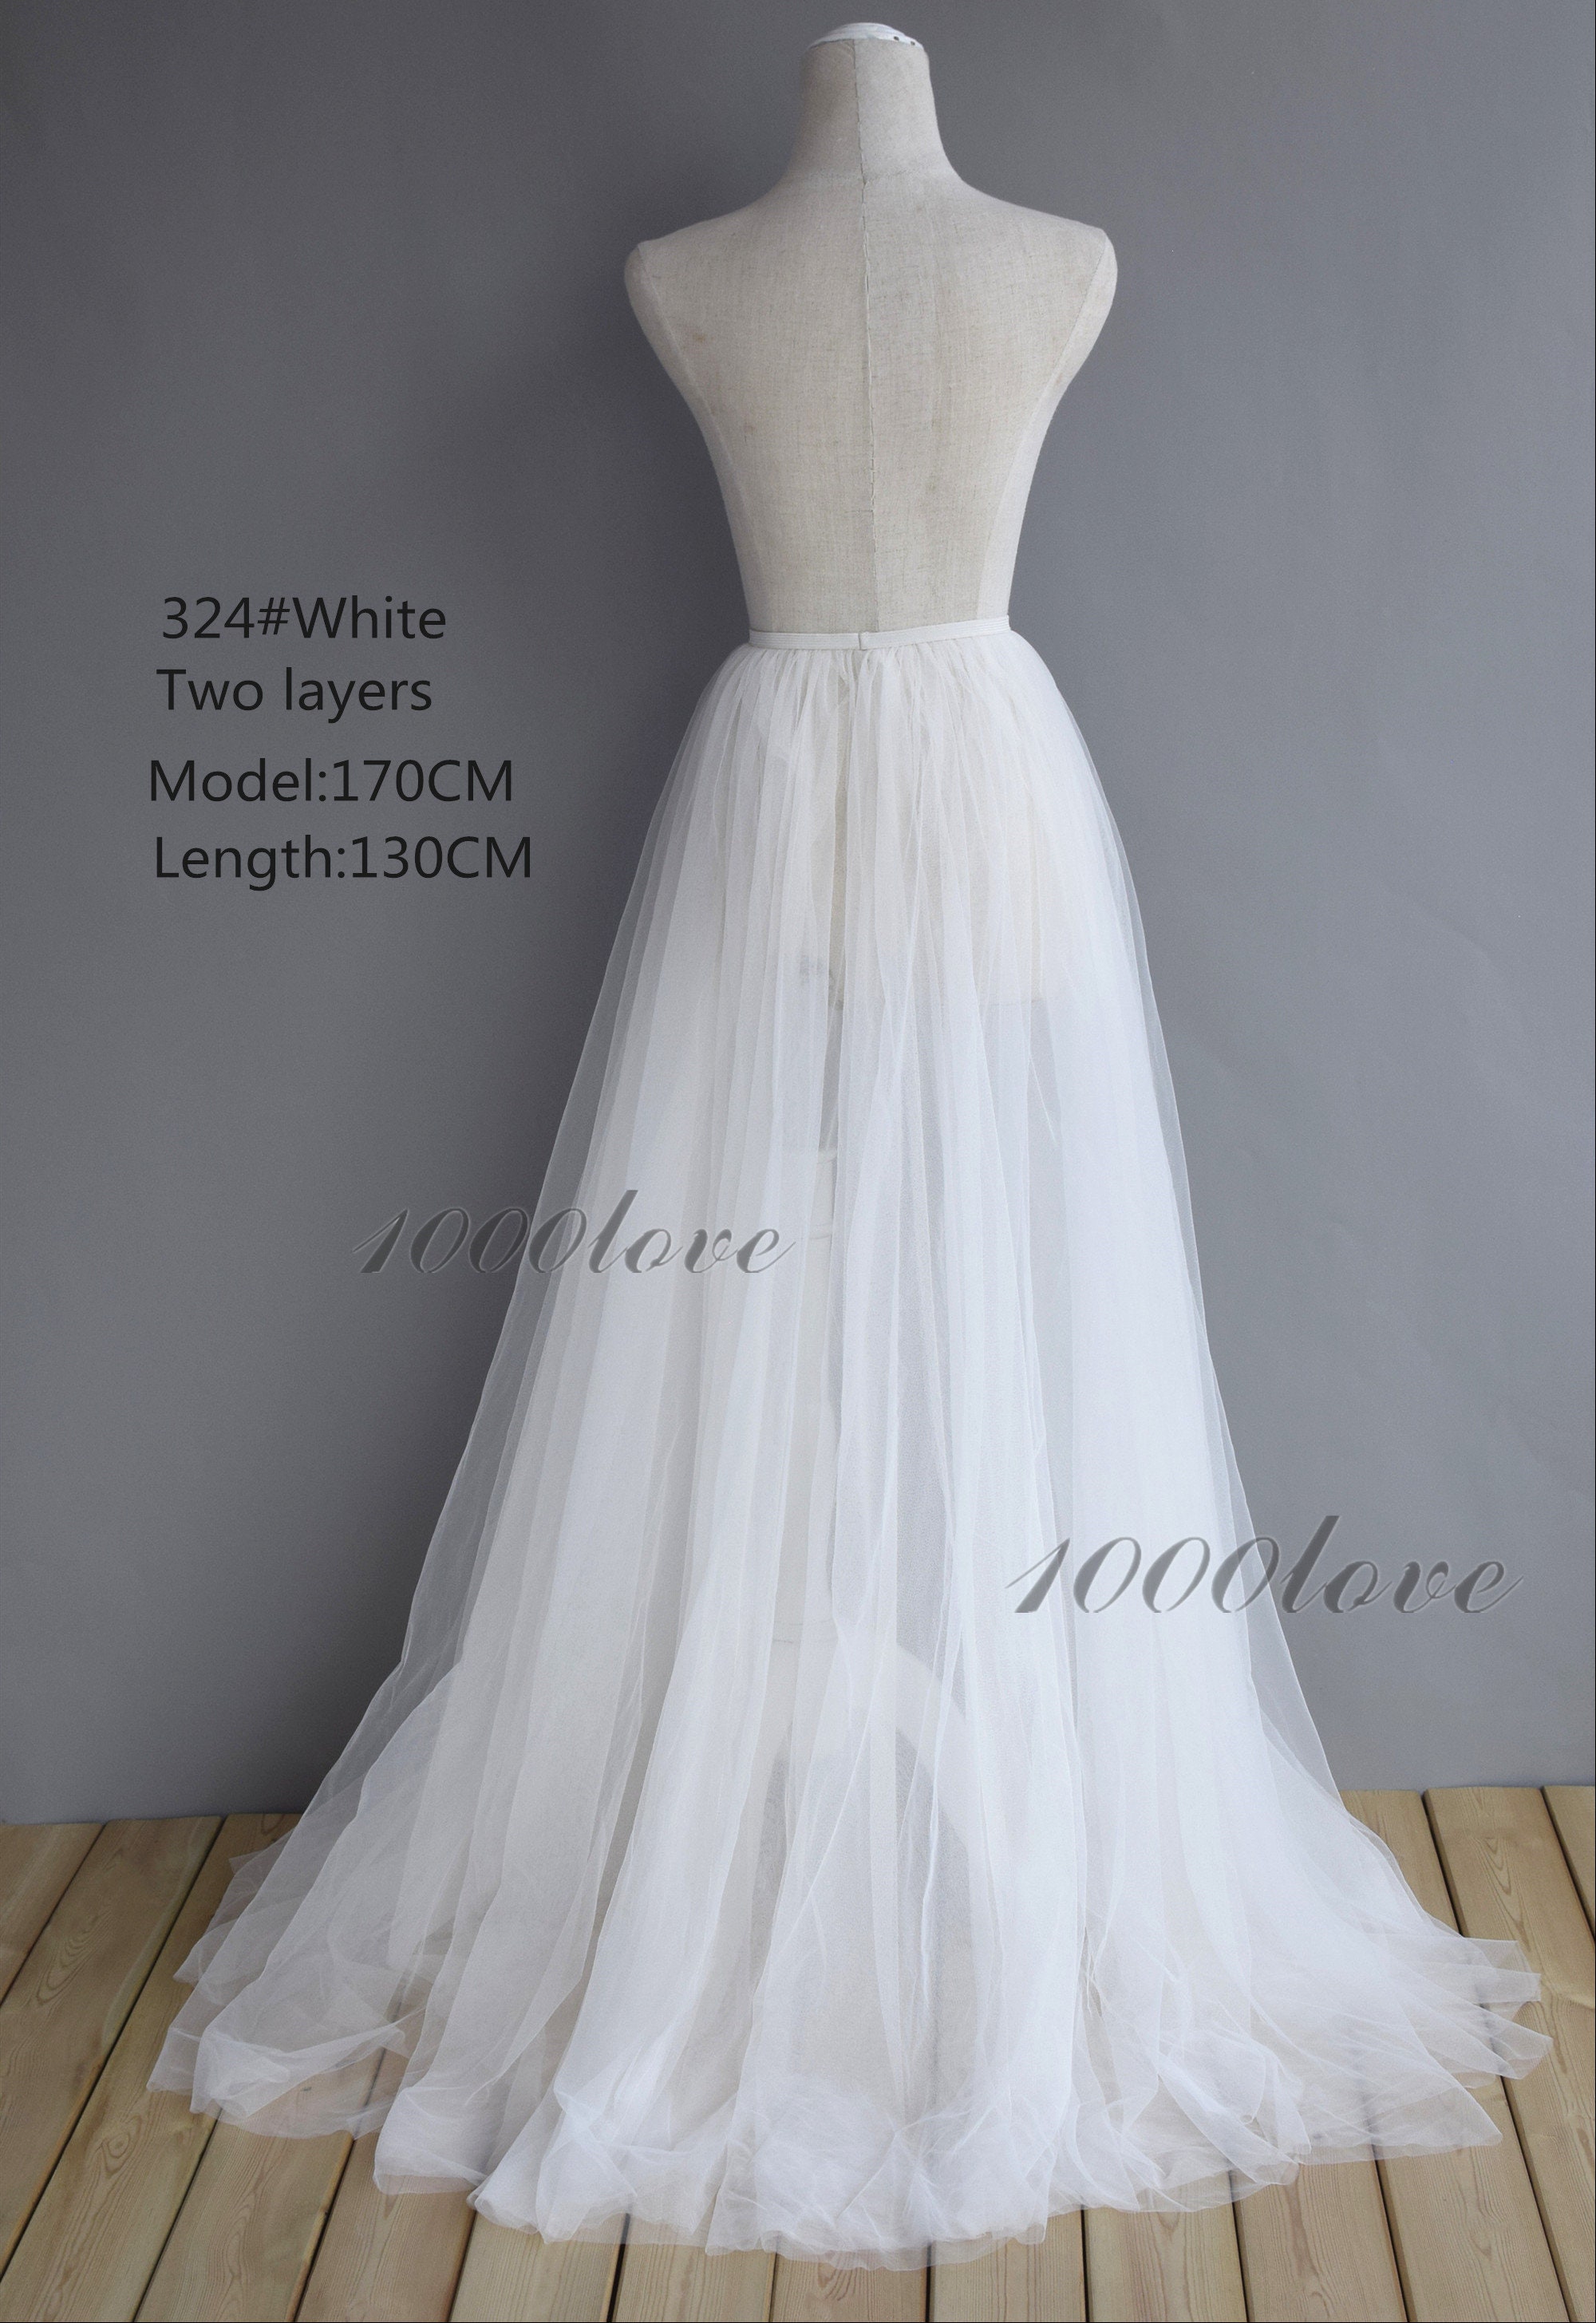 White Detachable Overskirt Softest Tulle Skirt Bride Wedding | Etsy UK